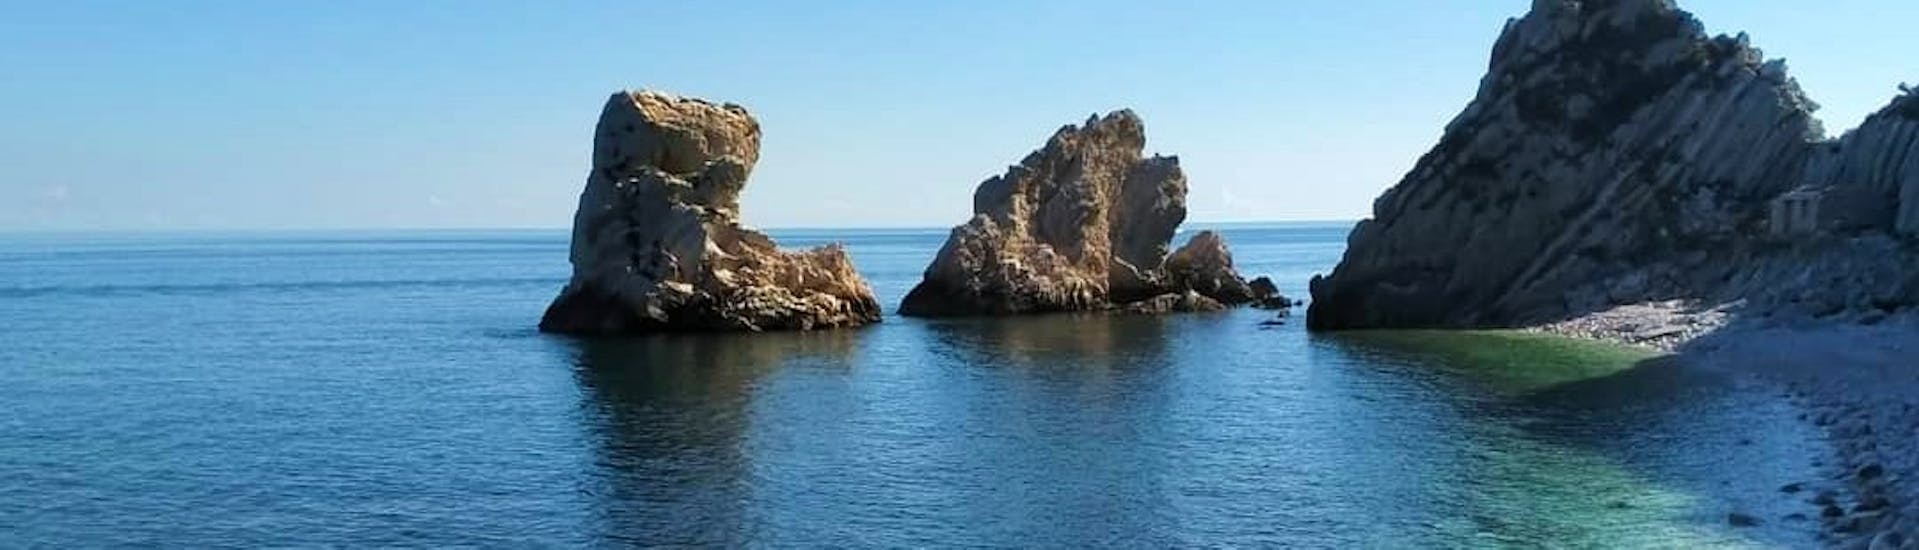 Balade privée en bateau Numana - Spiaggia del Frate avec Baignade & Visites touristiques.